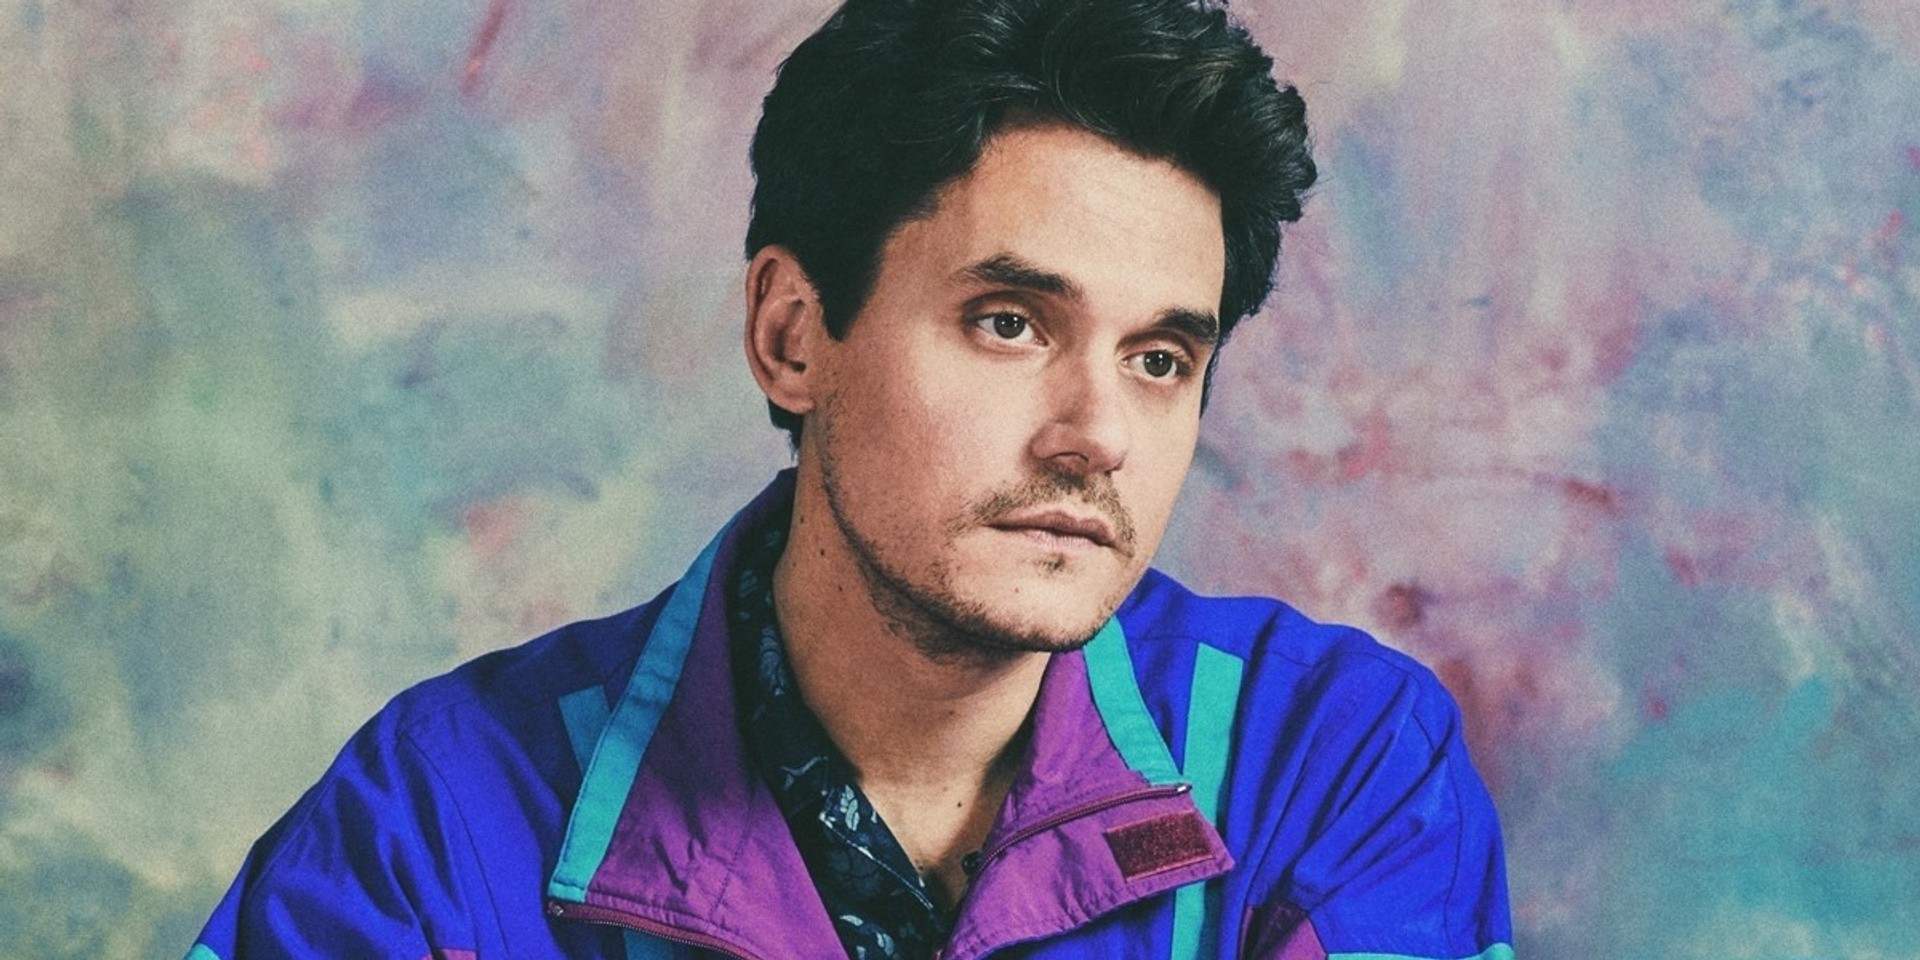 John Mayer serves 21st century seduction on new song 'New Light' – listen